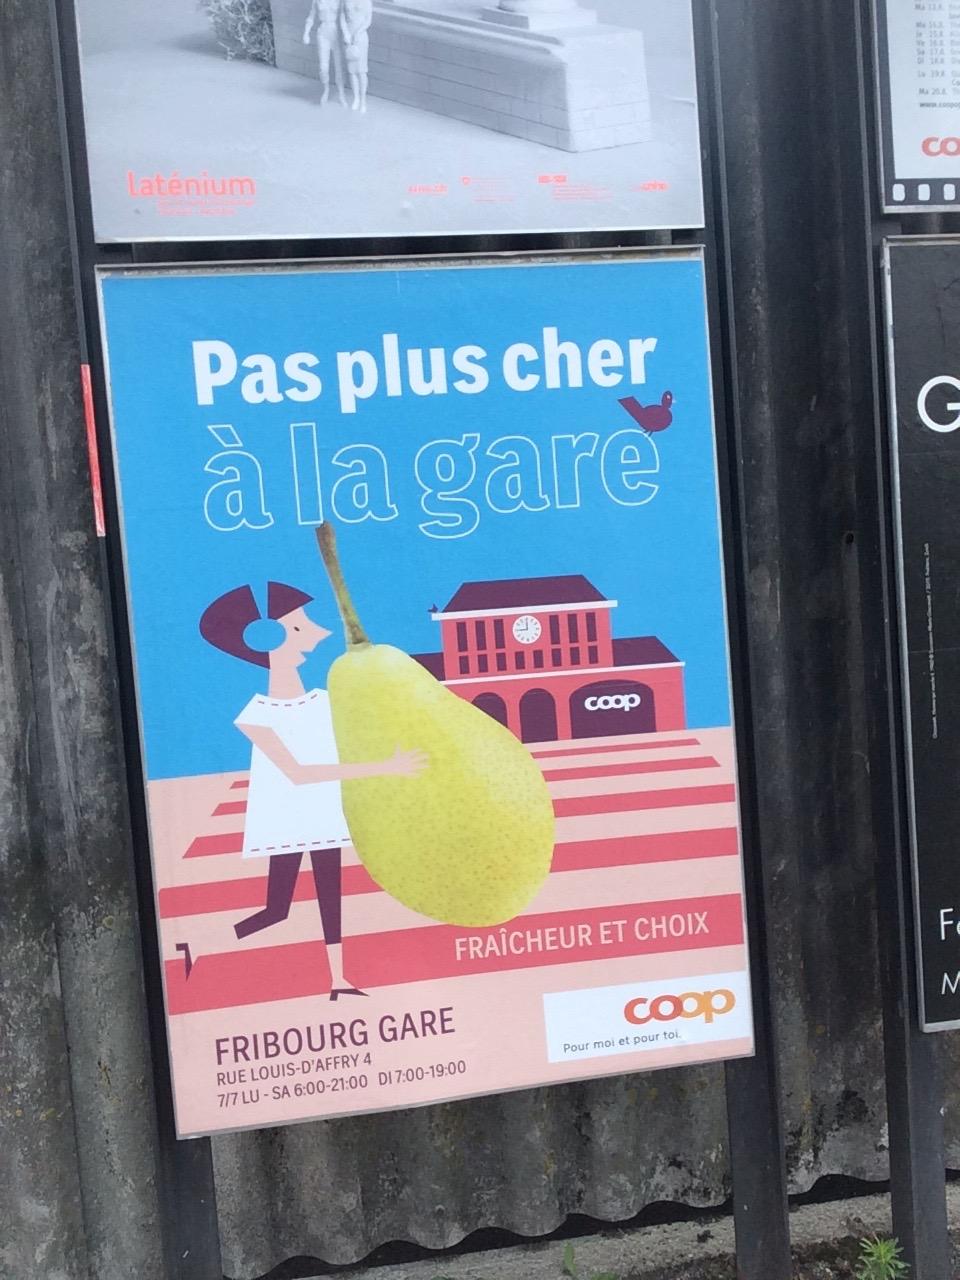 Publicité Coop pour son magasin de la gare de Fribourg [Source: FRC]